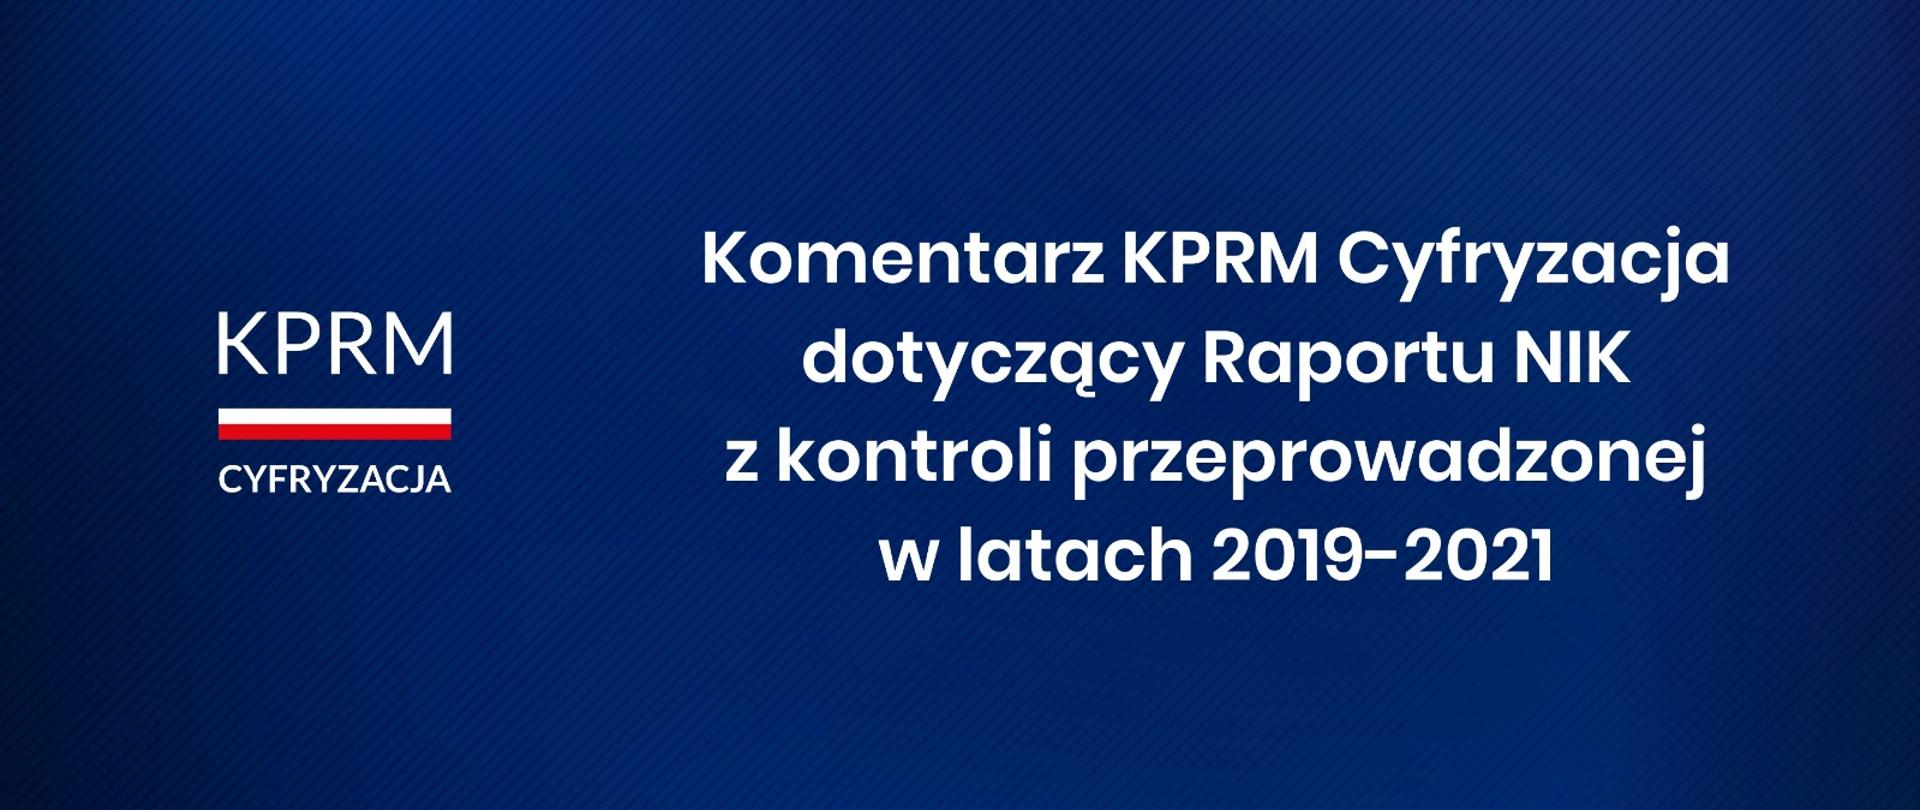 Komentarz KPRM Cyfryzacja dotyczący Raportu NIK z kontroli przeprowadzonej w latach 2019-2021